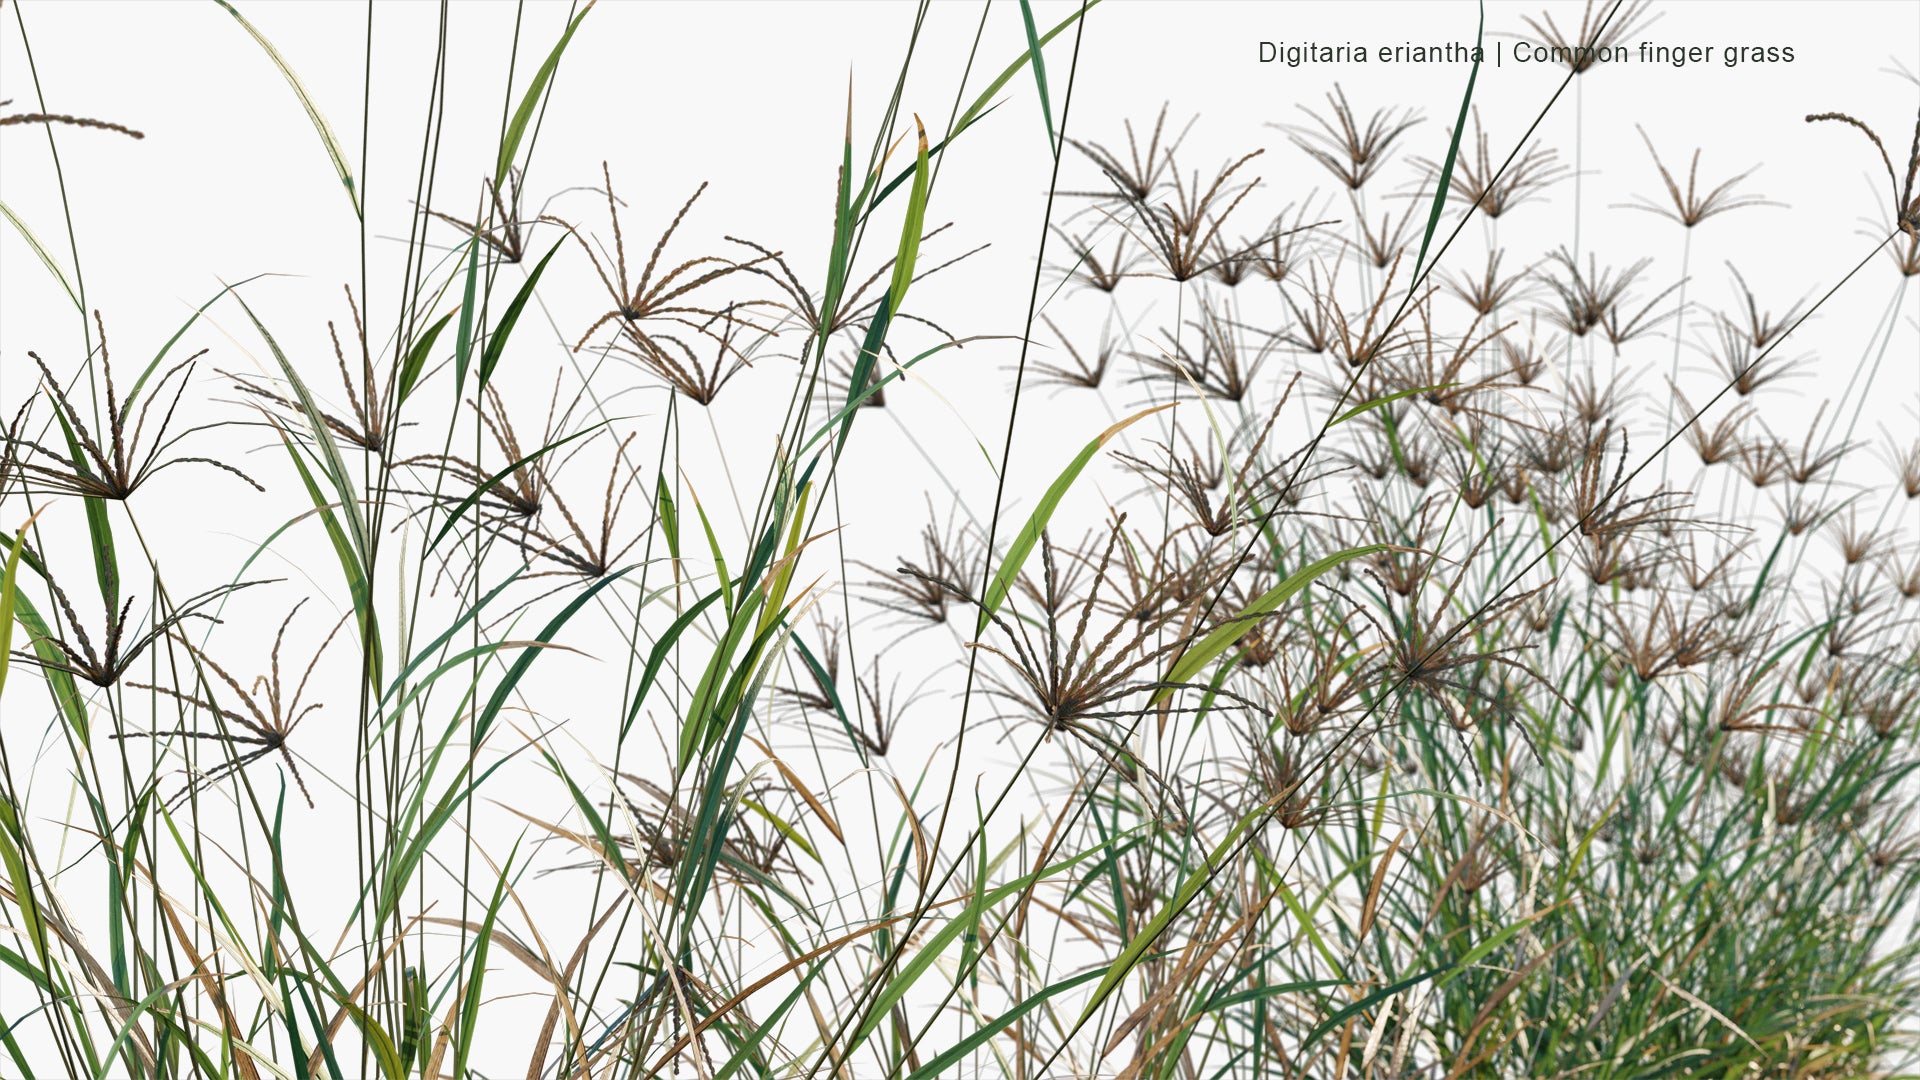 Low Poly Digitaria Eriantha - Digitgrass, Pangola-Grass, Common Finger Grass (3D Model)